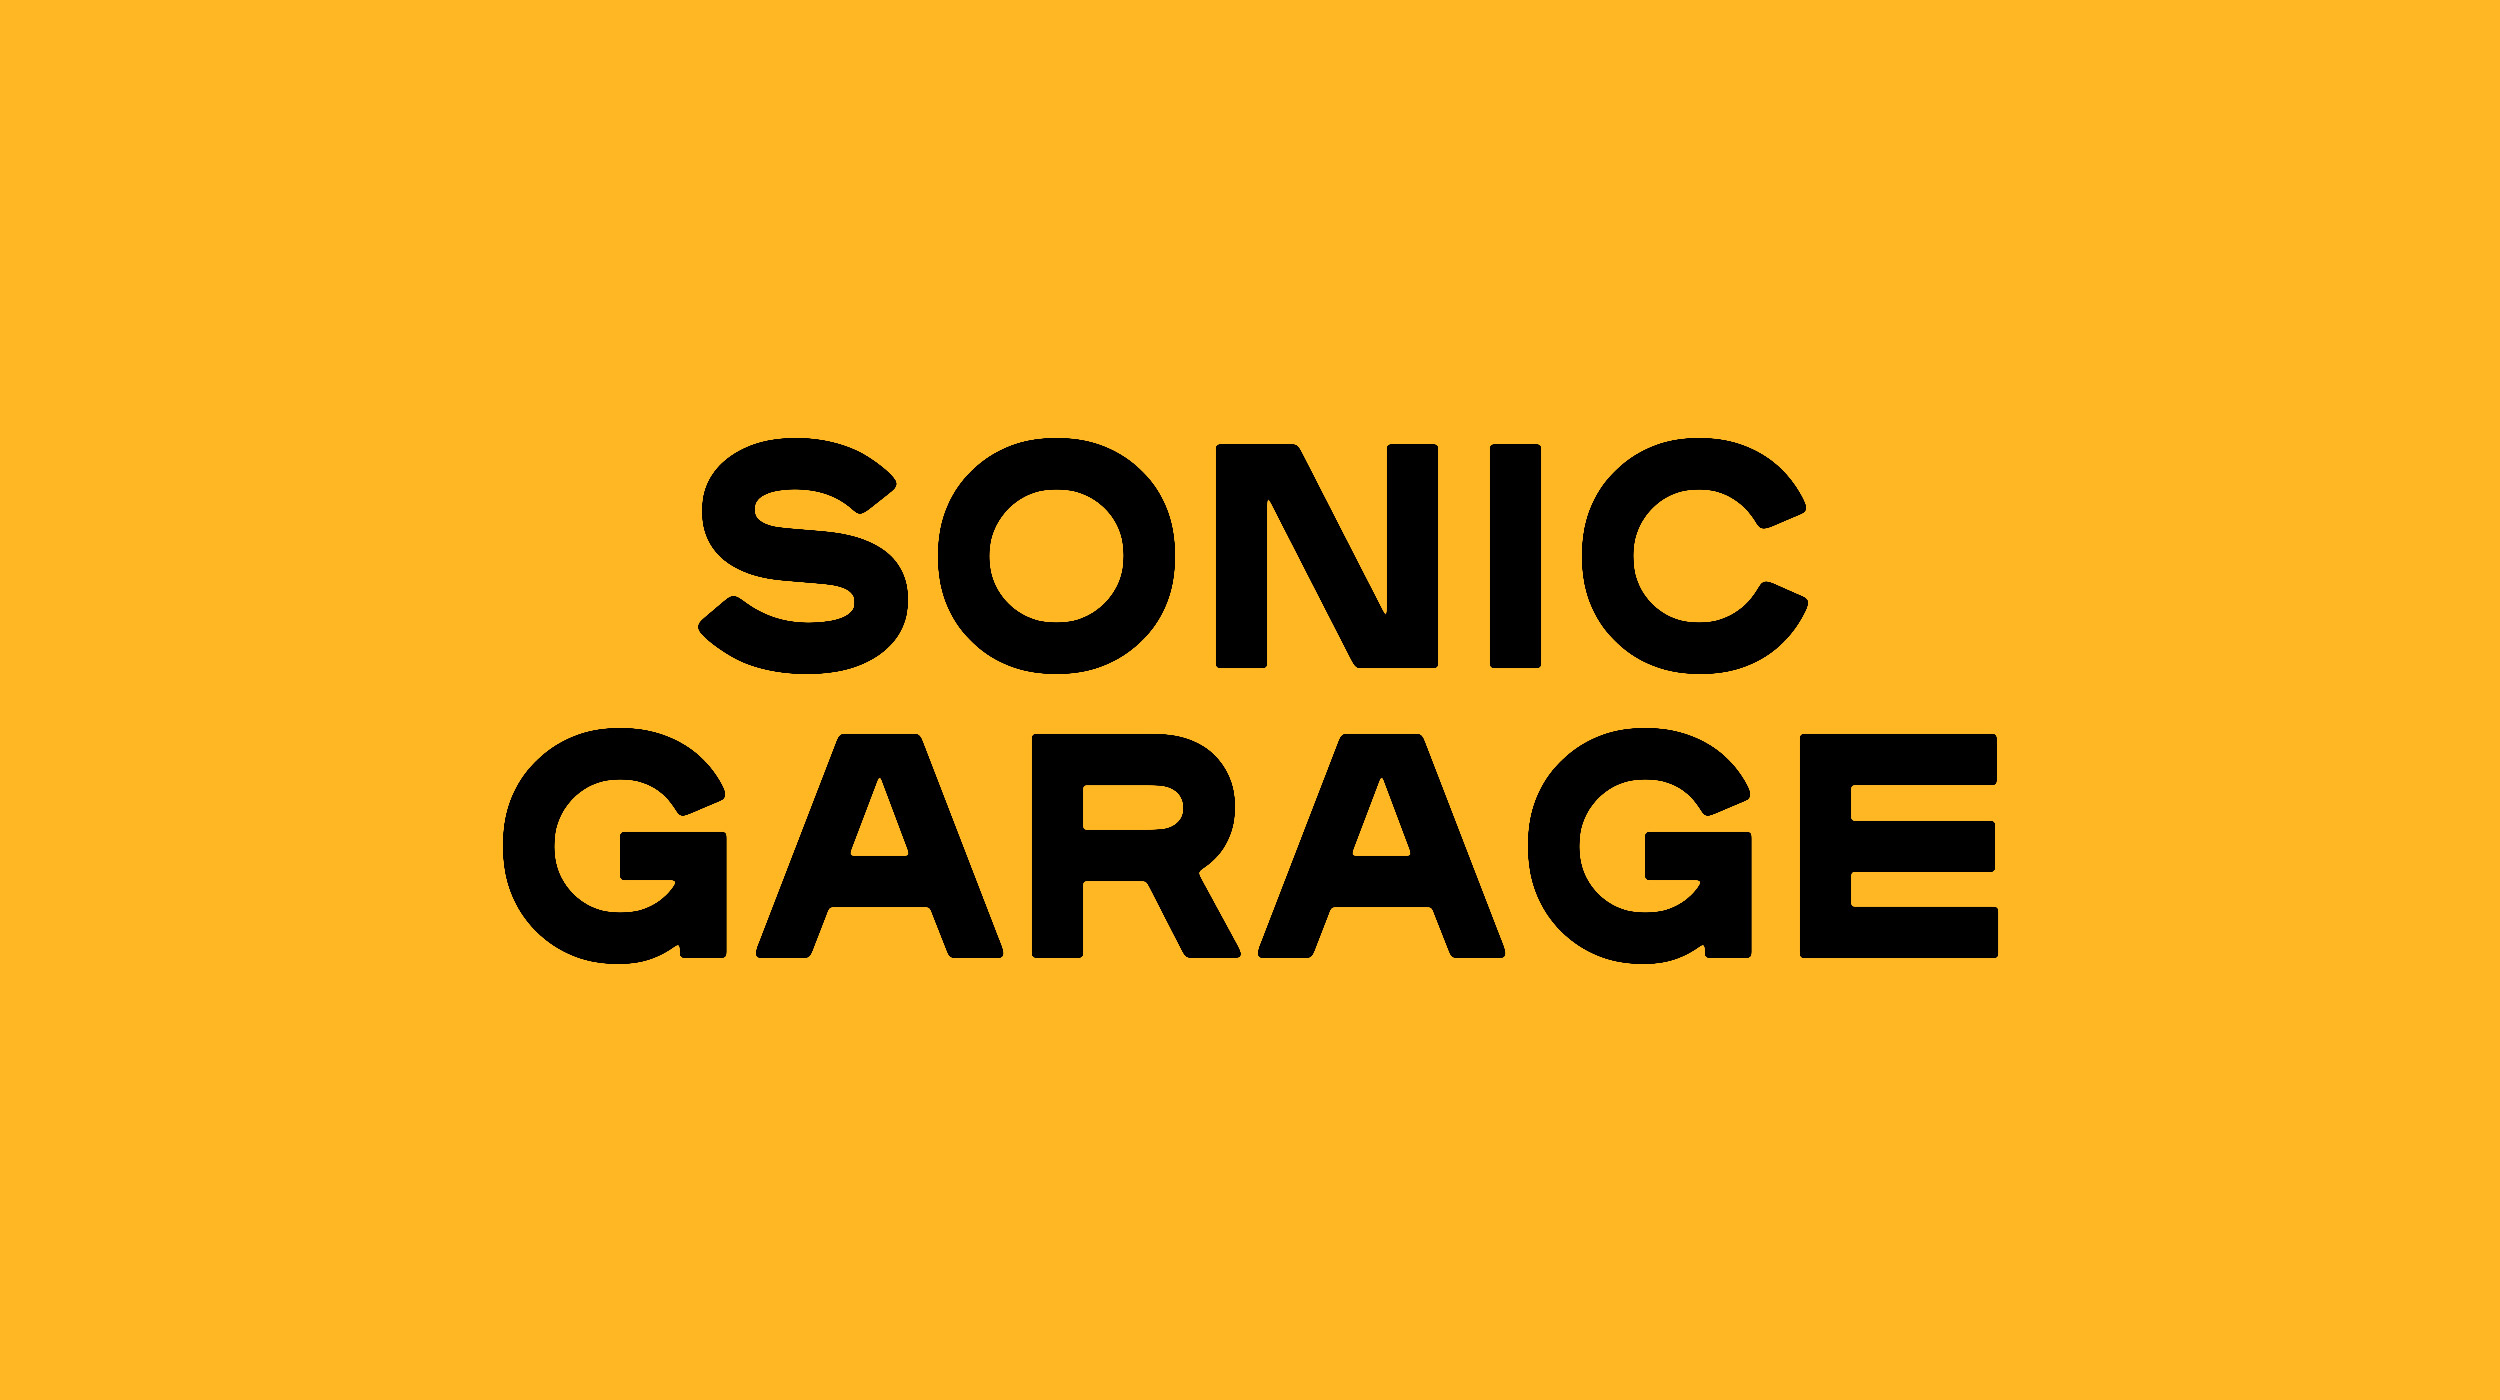 sonic-garage-1